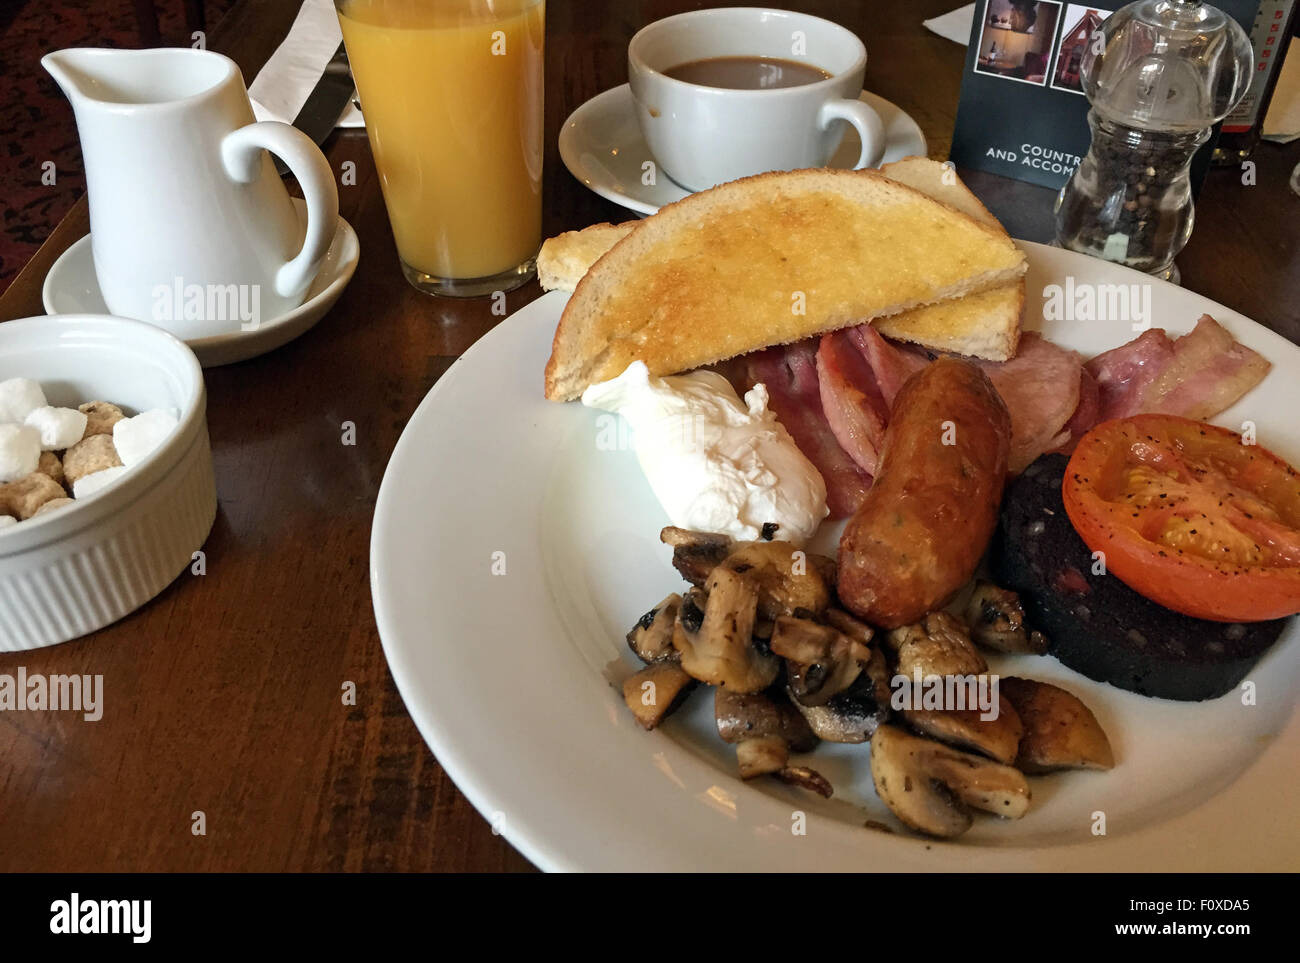 Tradizionale colazione all'inglese completa, uova, salsiccia, bacon, budino nero, toast, funghi da un caffè grassa cucchiaio - colazione inglese cucinata Foto Stock